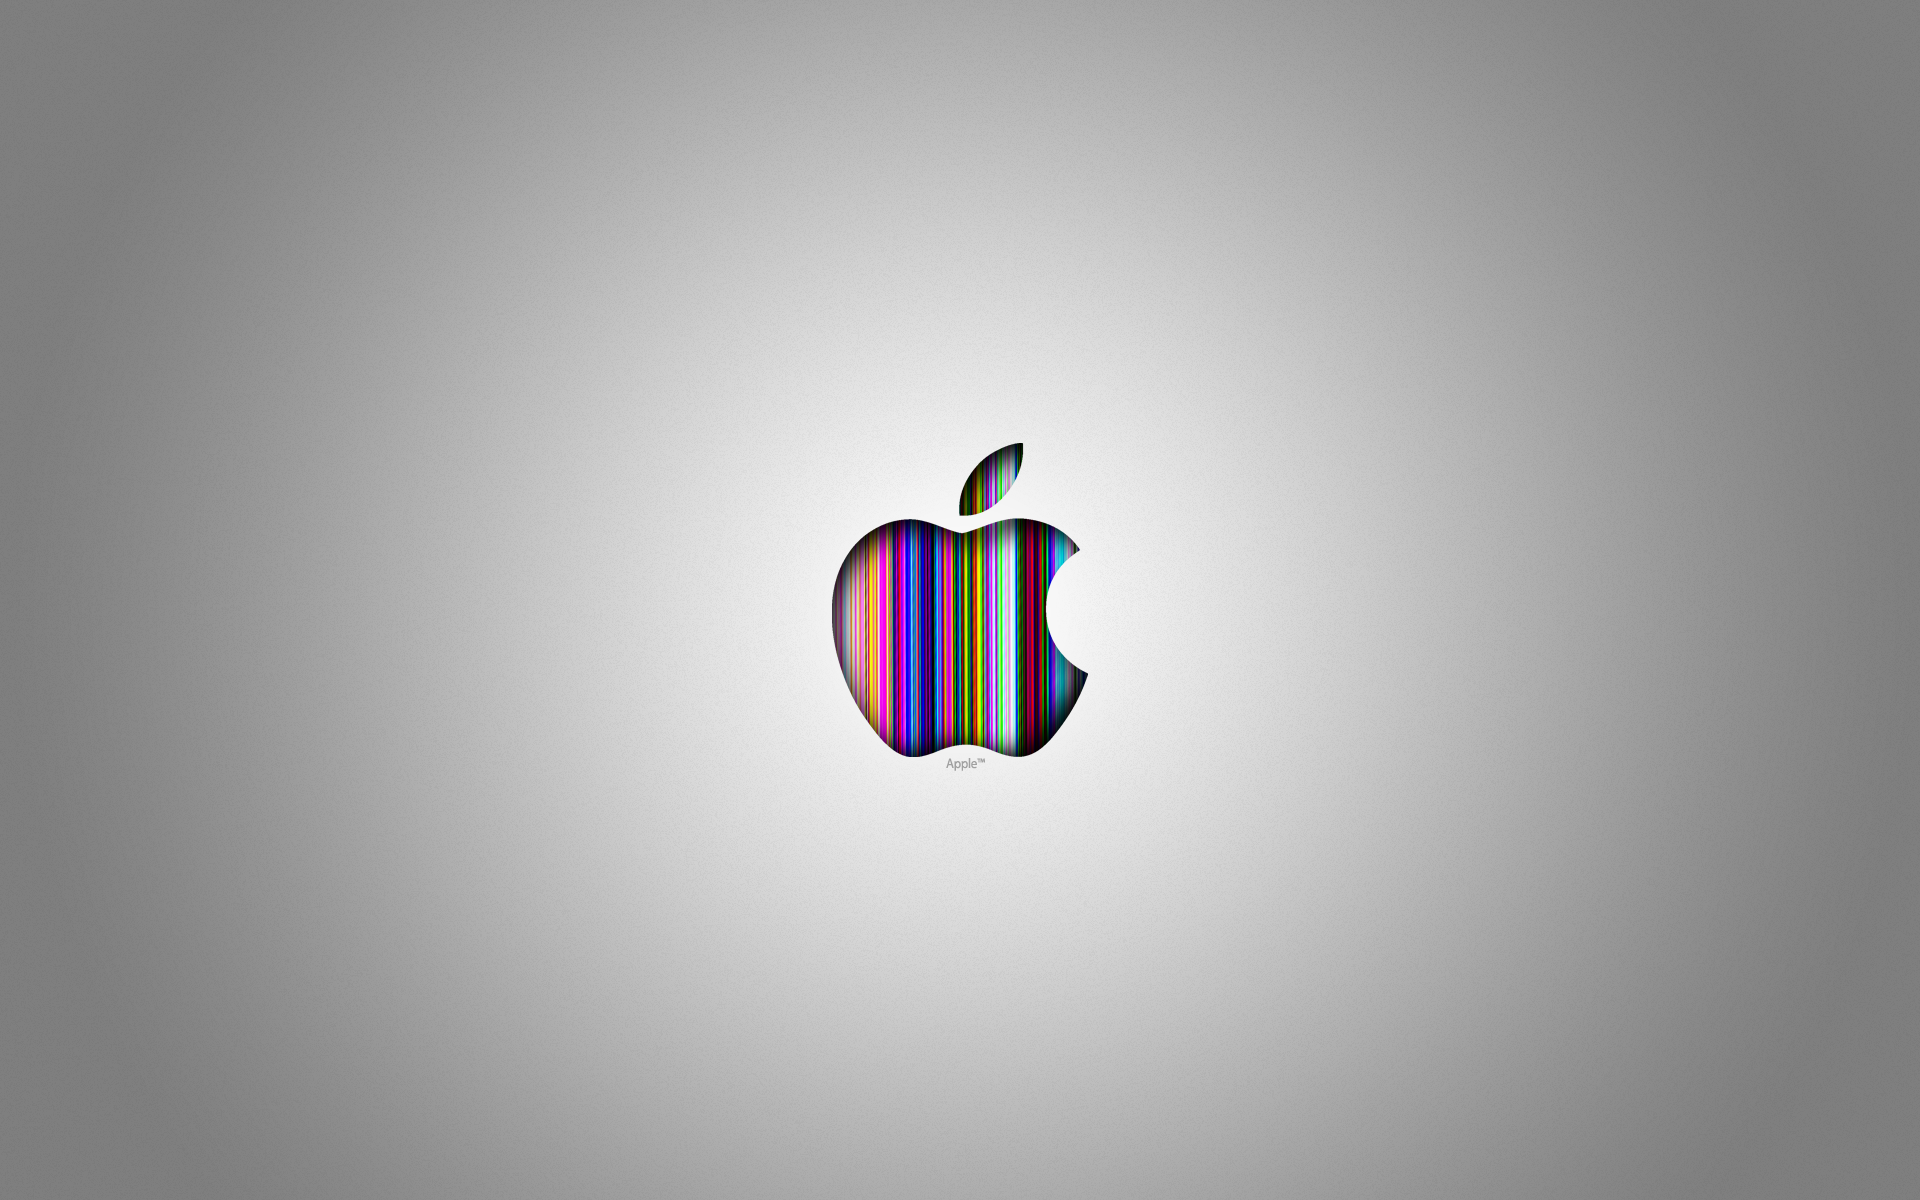 Обои эппл. Фон Apple. Заставка Apple. Рабочий стол айфон. Apple красивый логотип.